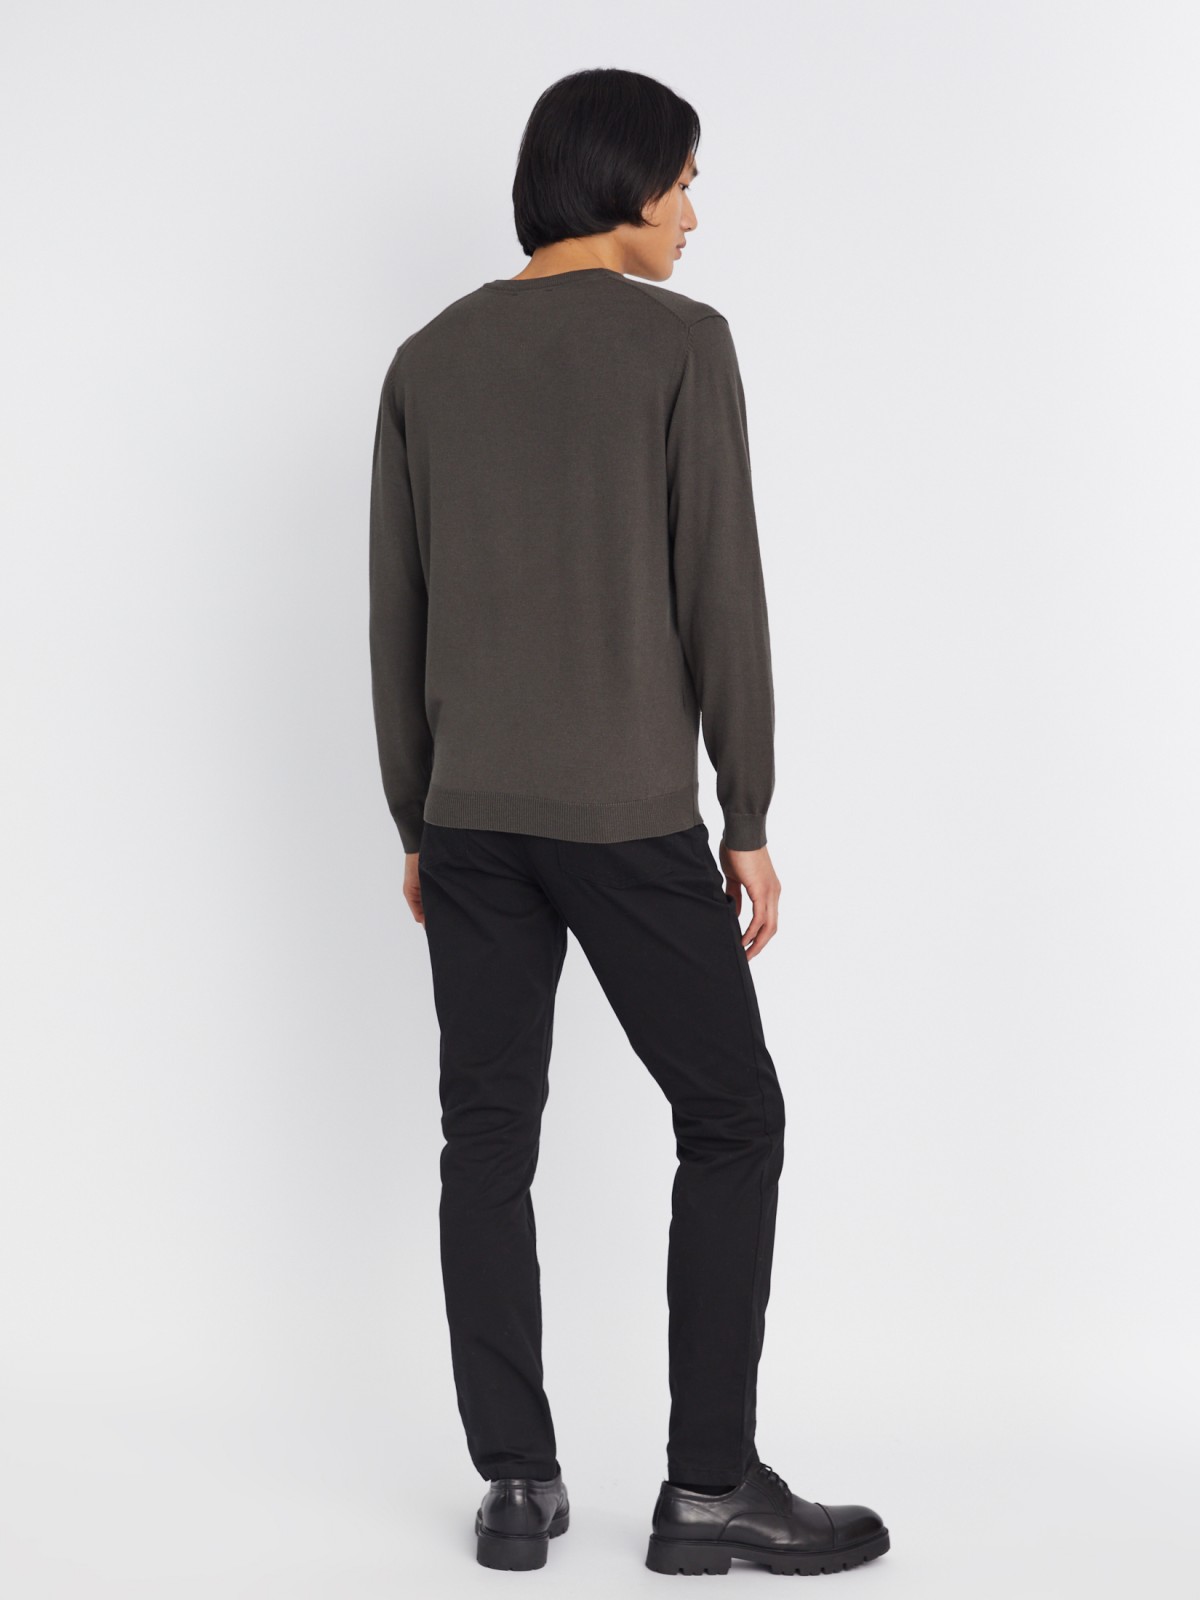 Шерстяной трикотажный пуловер с треугольным вырезом и длинным рукавом zolla 013346163042, цвет темно-серый, размер M - фото 6